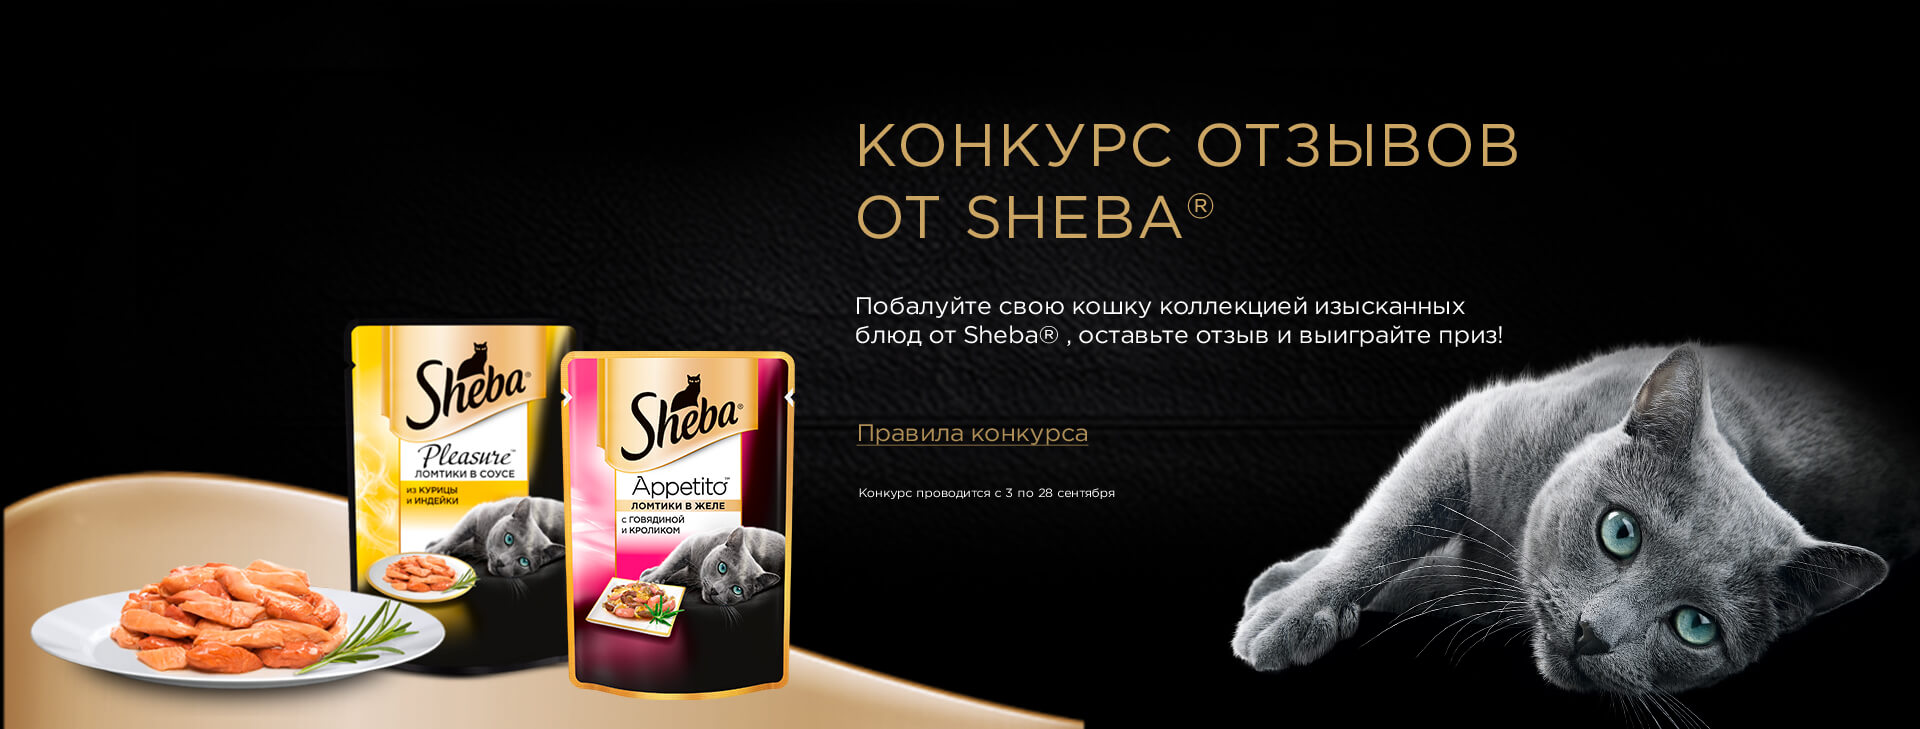 Рекламная акция Sheba «Поделись своими впечатлениями о корме Sheba»